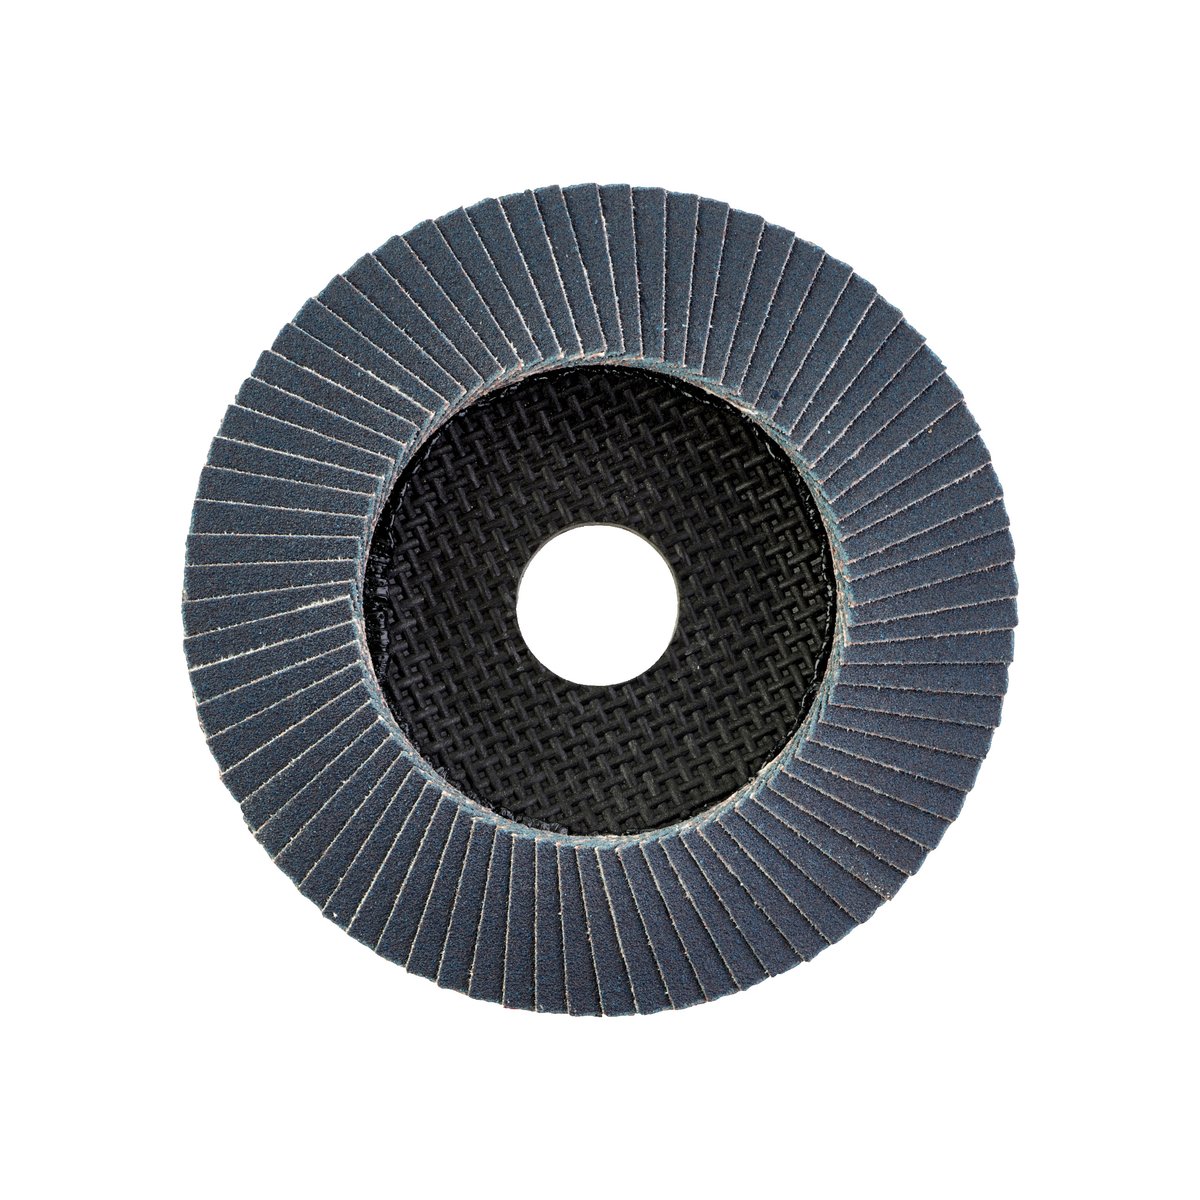 Лепестковый диск SL50/115G120 Zirconium 115 мм / Зерно 120 замена для 4932430413 